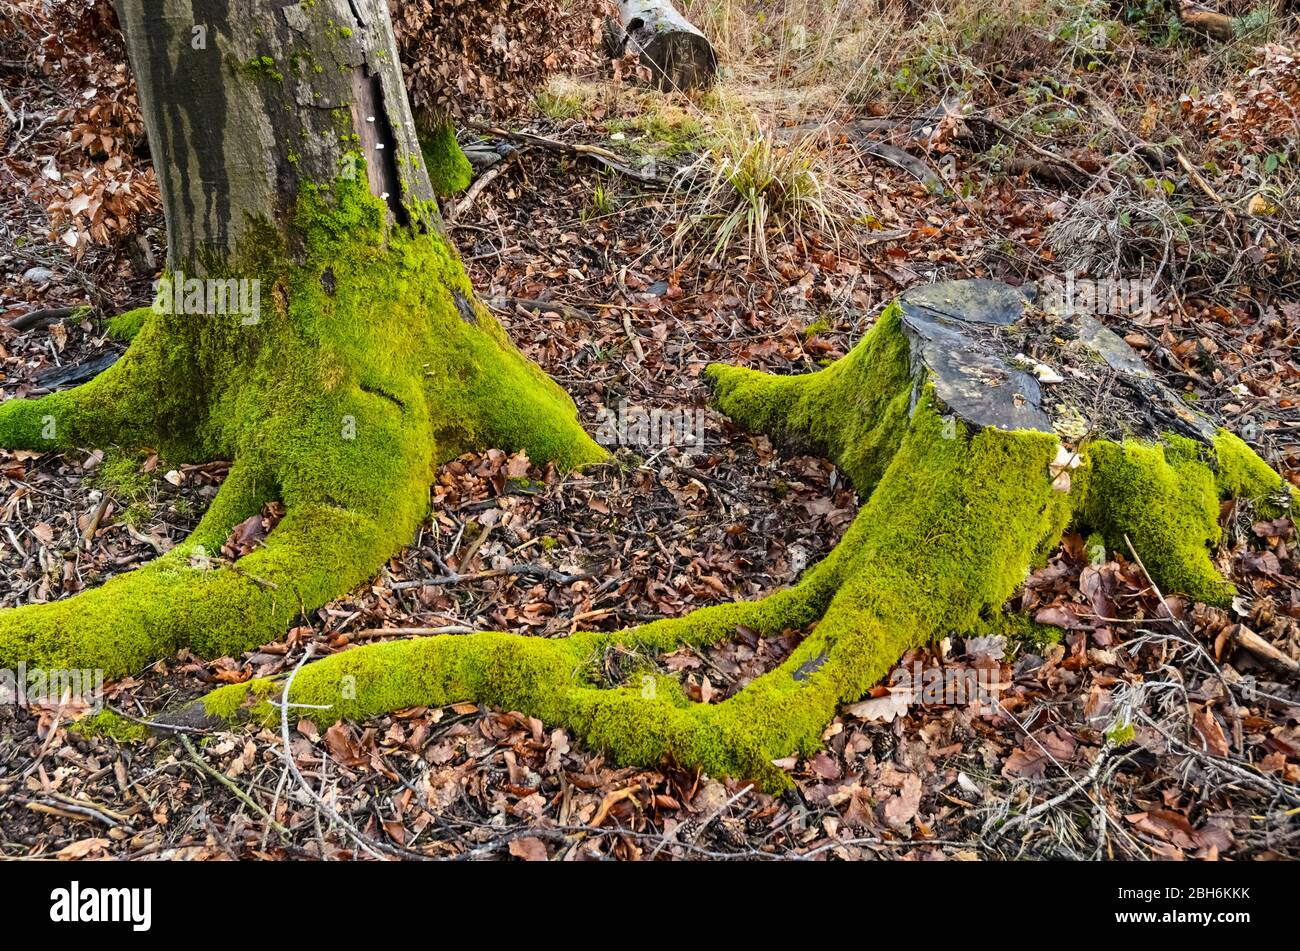 Piante di muschio, Bryophita, su un tronco di albero nella foresta in Renania-Palatinato, Germania, Europa occidentale Foto Stock